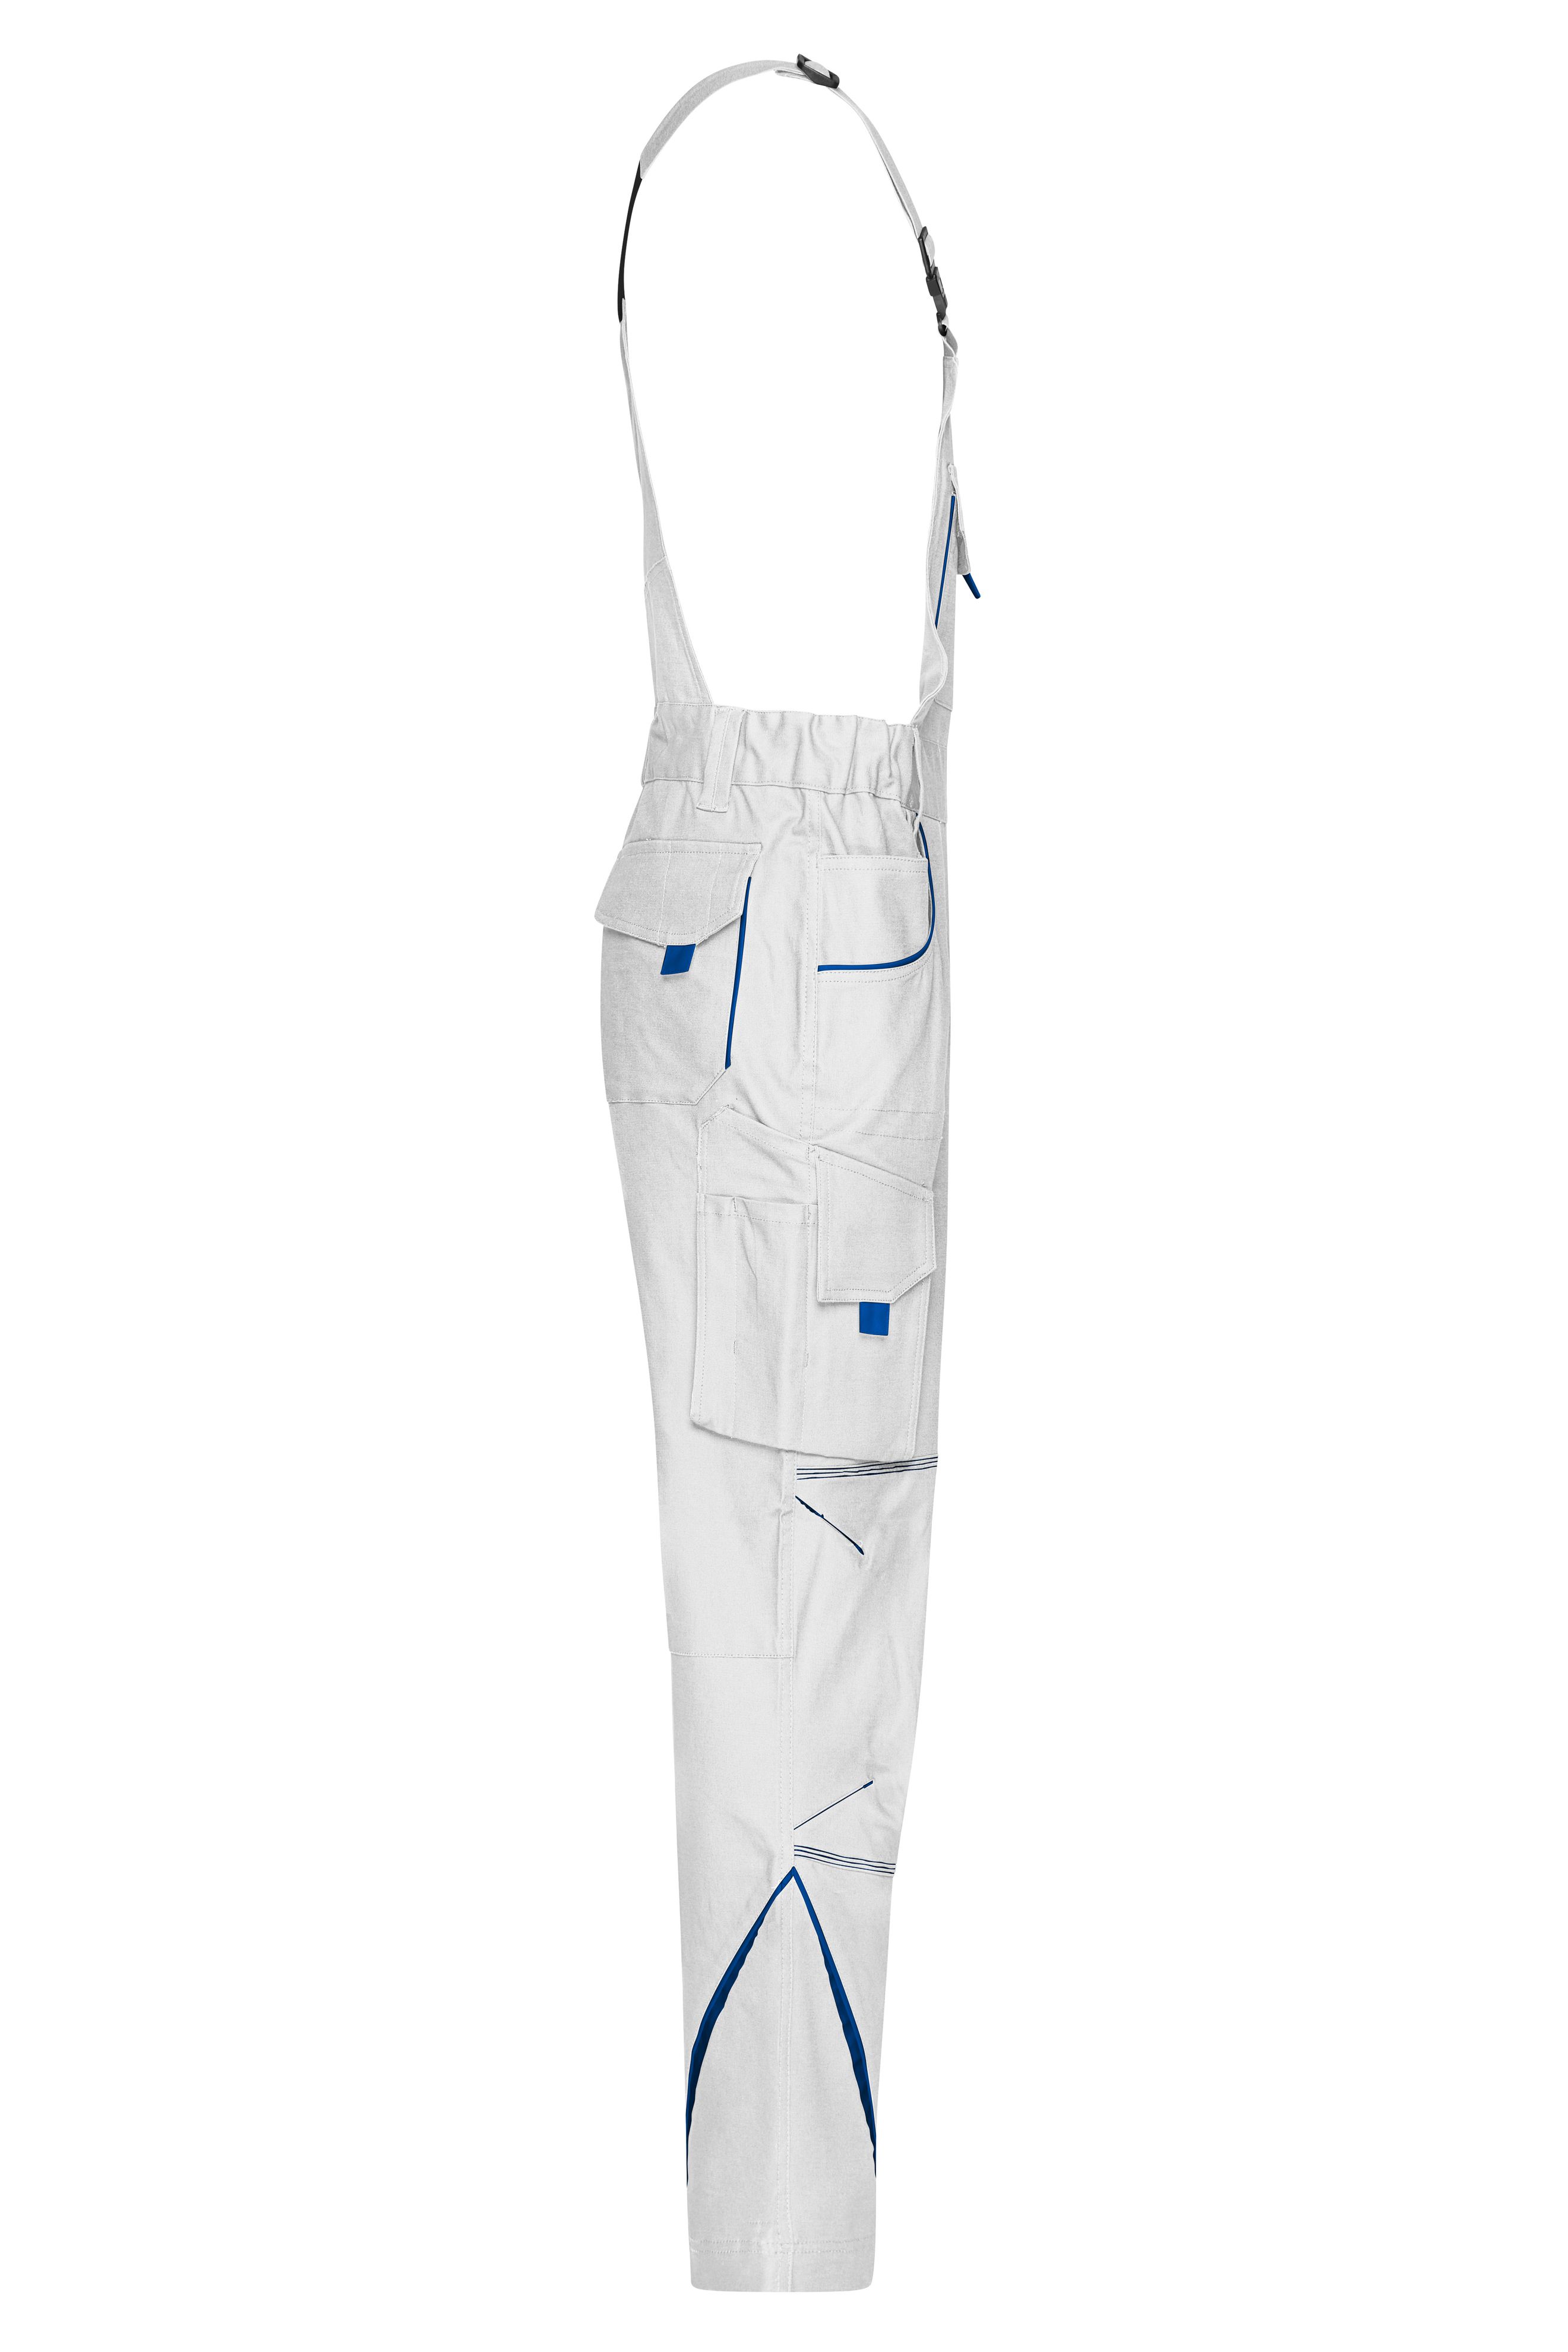 Workwear Pants with Bib - COLOR - JN848 Funktionelle Latzhose im sportlichen Look mit hochwertigen Details